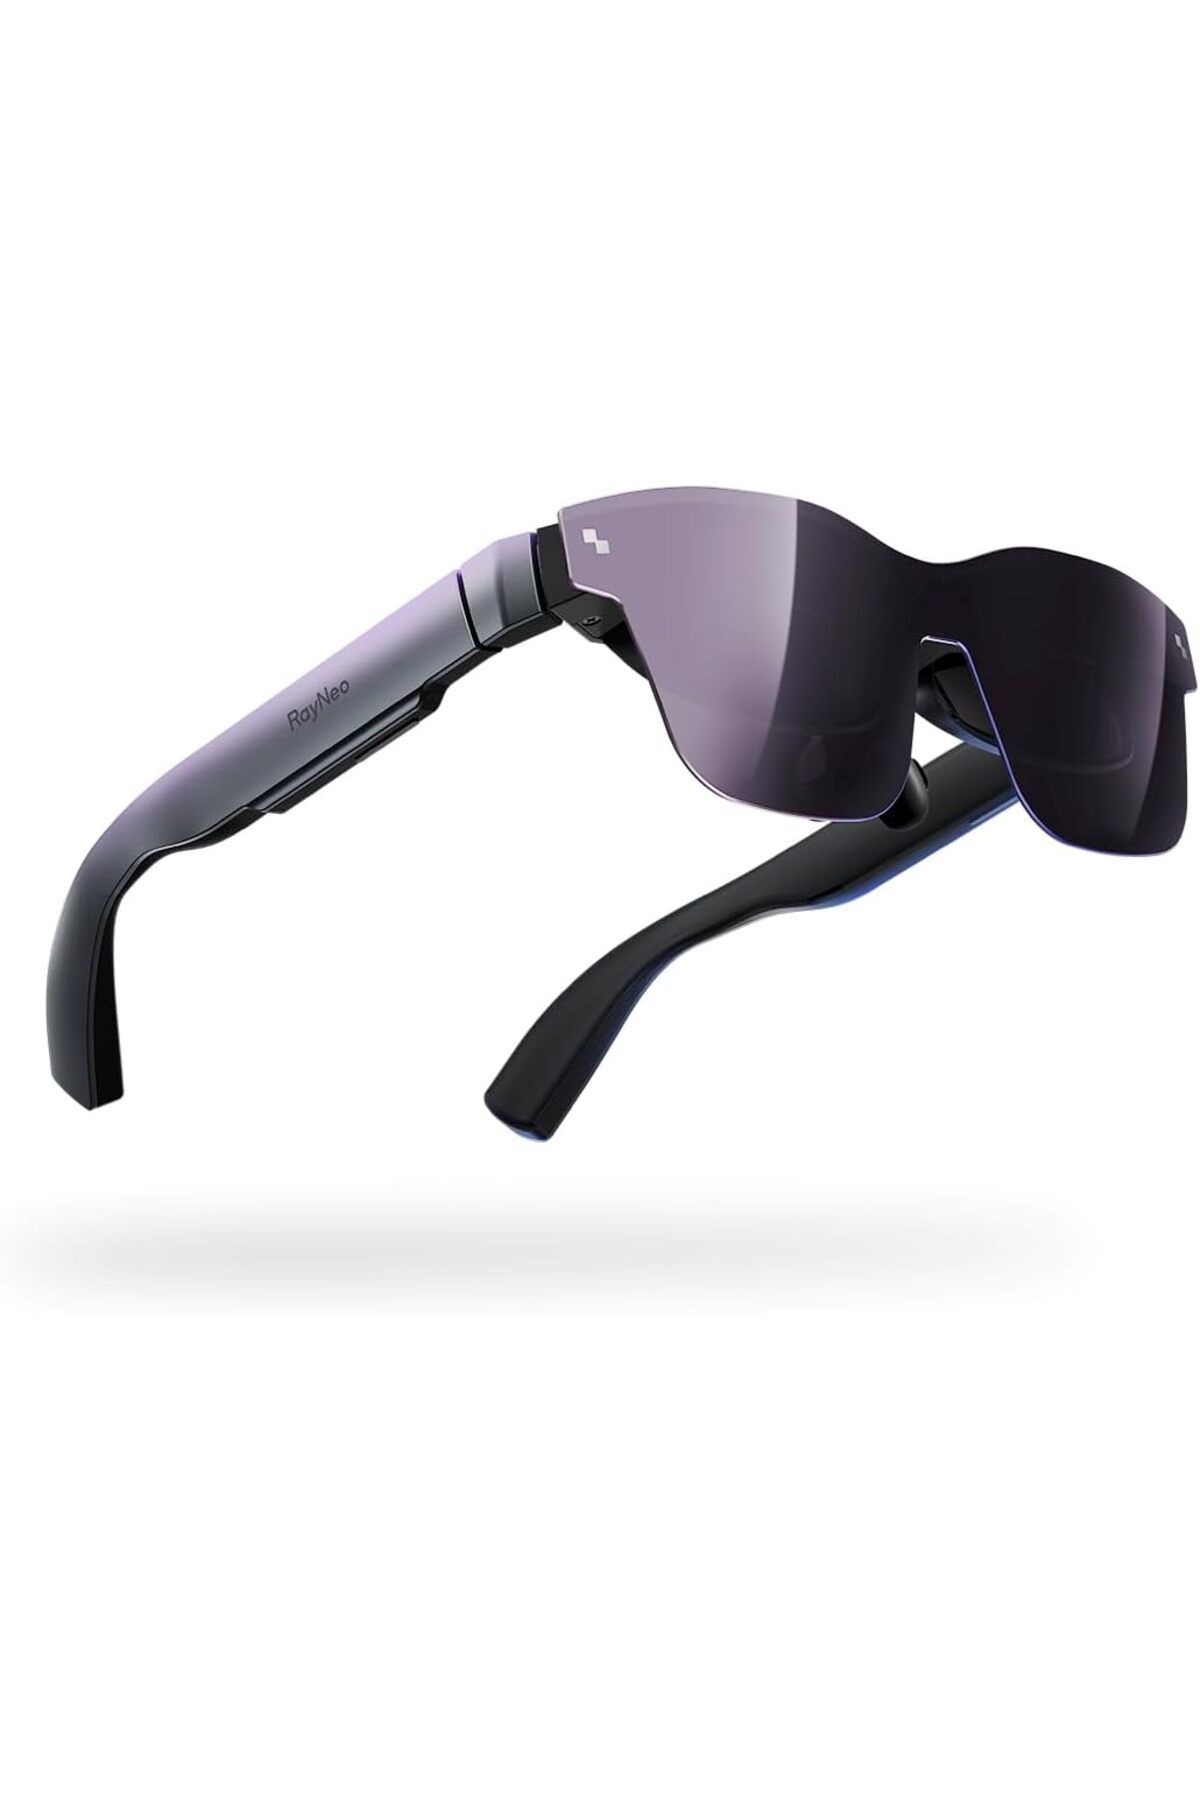 RayNeo Air 2 AR Gözlük - 201 Inc Mikro OLED'li Akıllı Gözlük, XR Gözlük 1080P